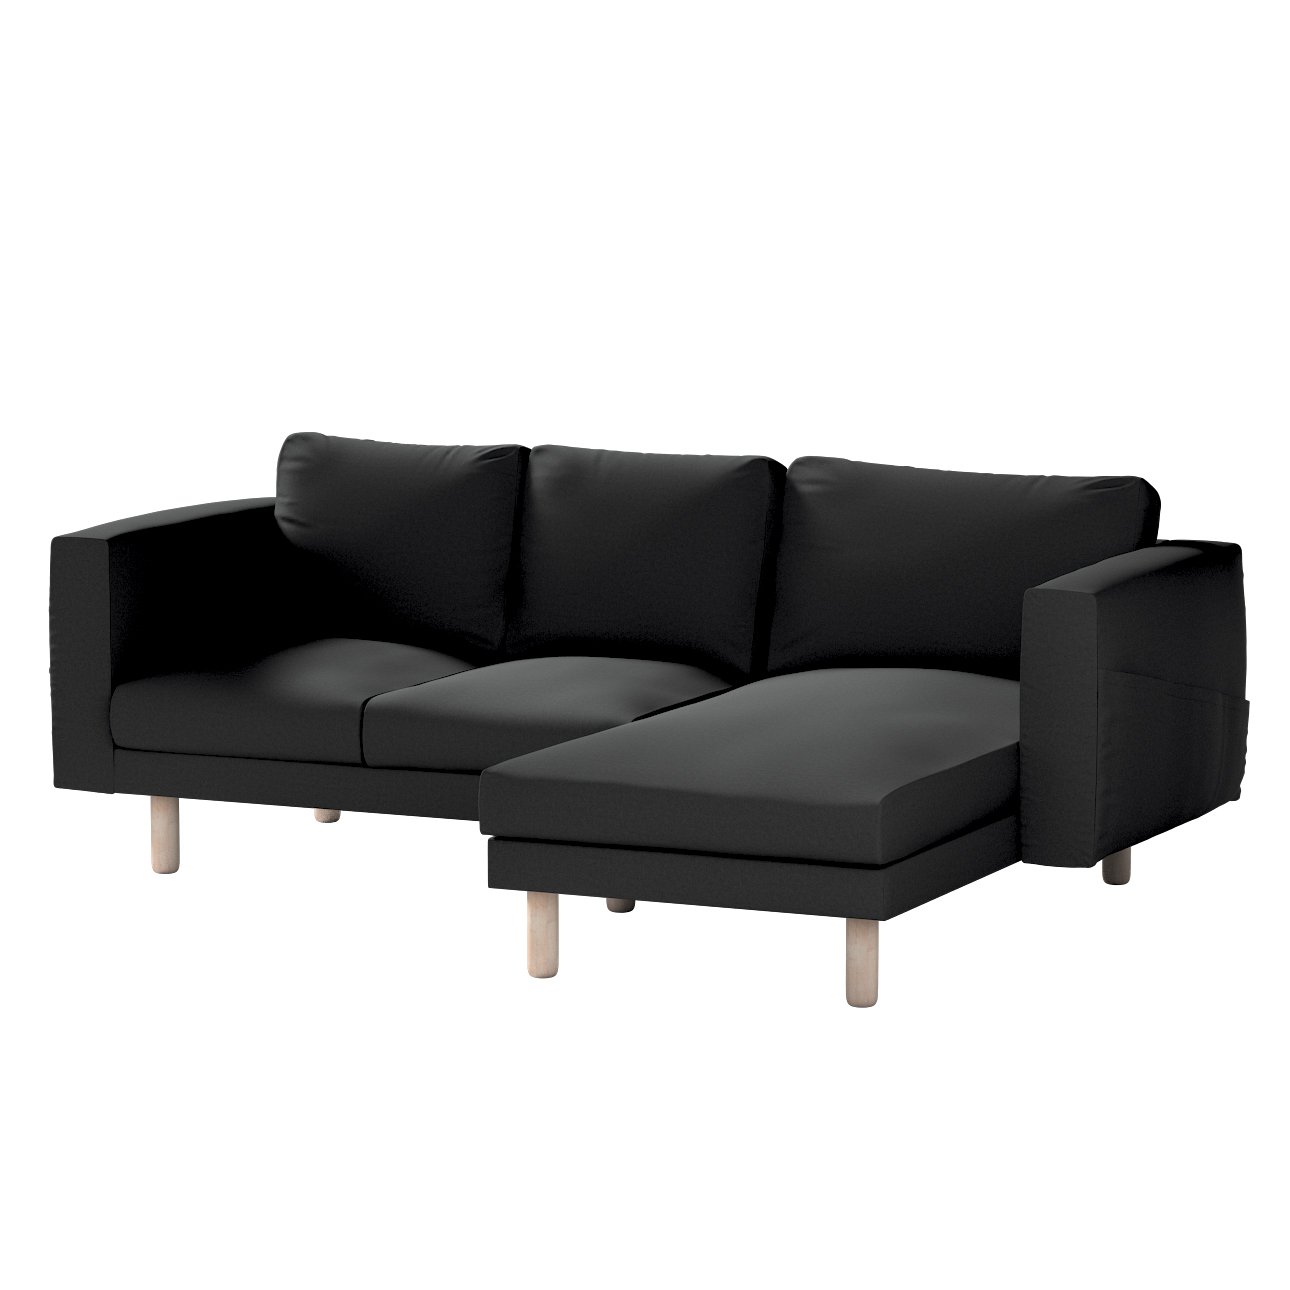 Bezug für Norsborg 3-Sitzer Sofa mit Recamiere, schwarz, Norsborg Bezug für günstig online kaufen